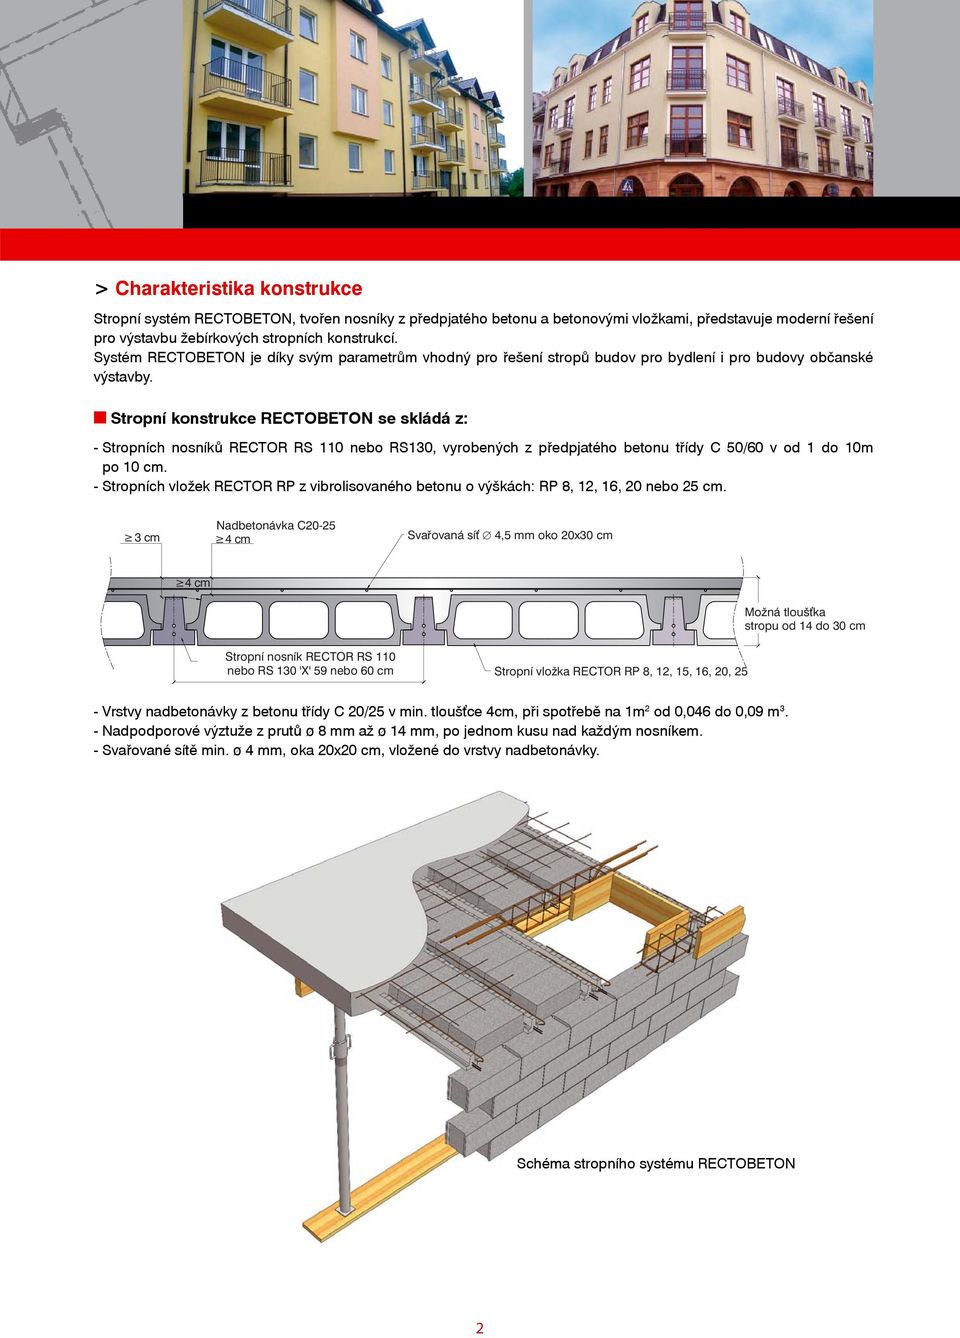 n Stropní konstrukce RECTOBETON se skládá z: - Stropních nosníků RECTOR nebo RS130, vyrobených z předpjatého betonu třídy C 50/60 v od 1 do 10m po 10 cm.